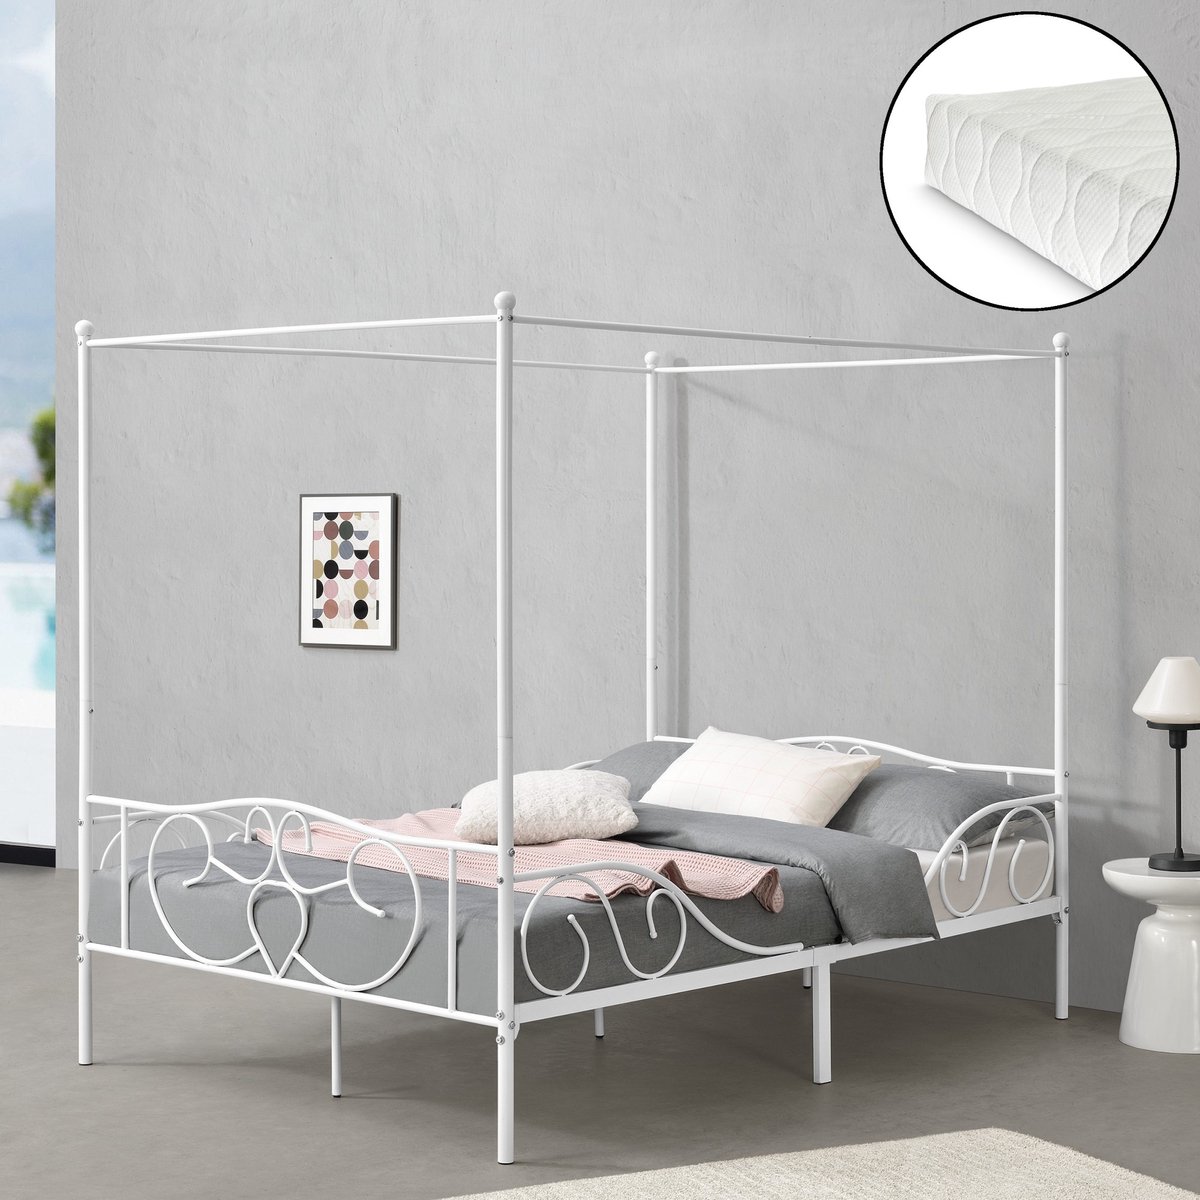 Metalen hemelbed Alesia - met bedbodem en matras - 140x200 cm - wit - stabiel frame - minimalistisch design